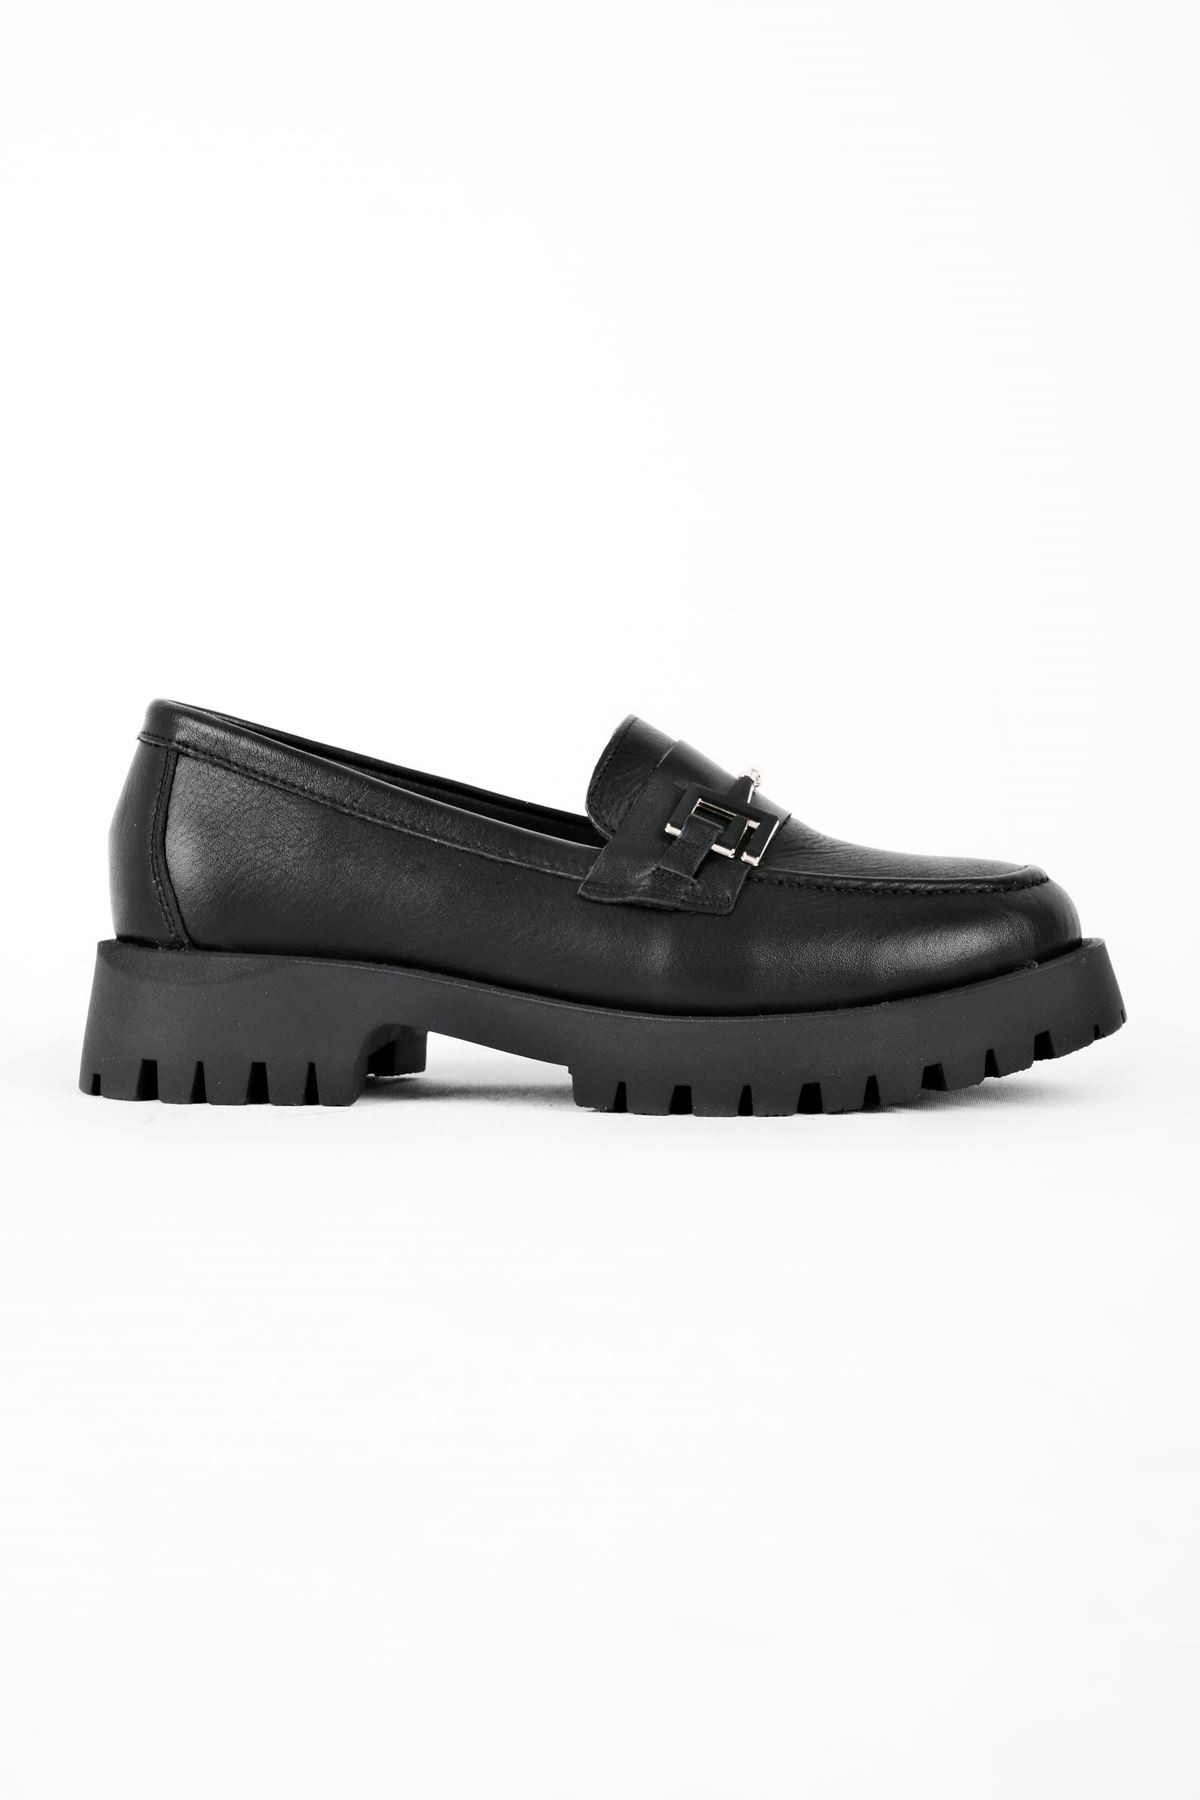 Ropy Toka Detaylı Hakiki Deri Kadın Loafer Ayakkabı B2943 - Siyah